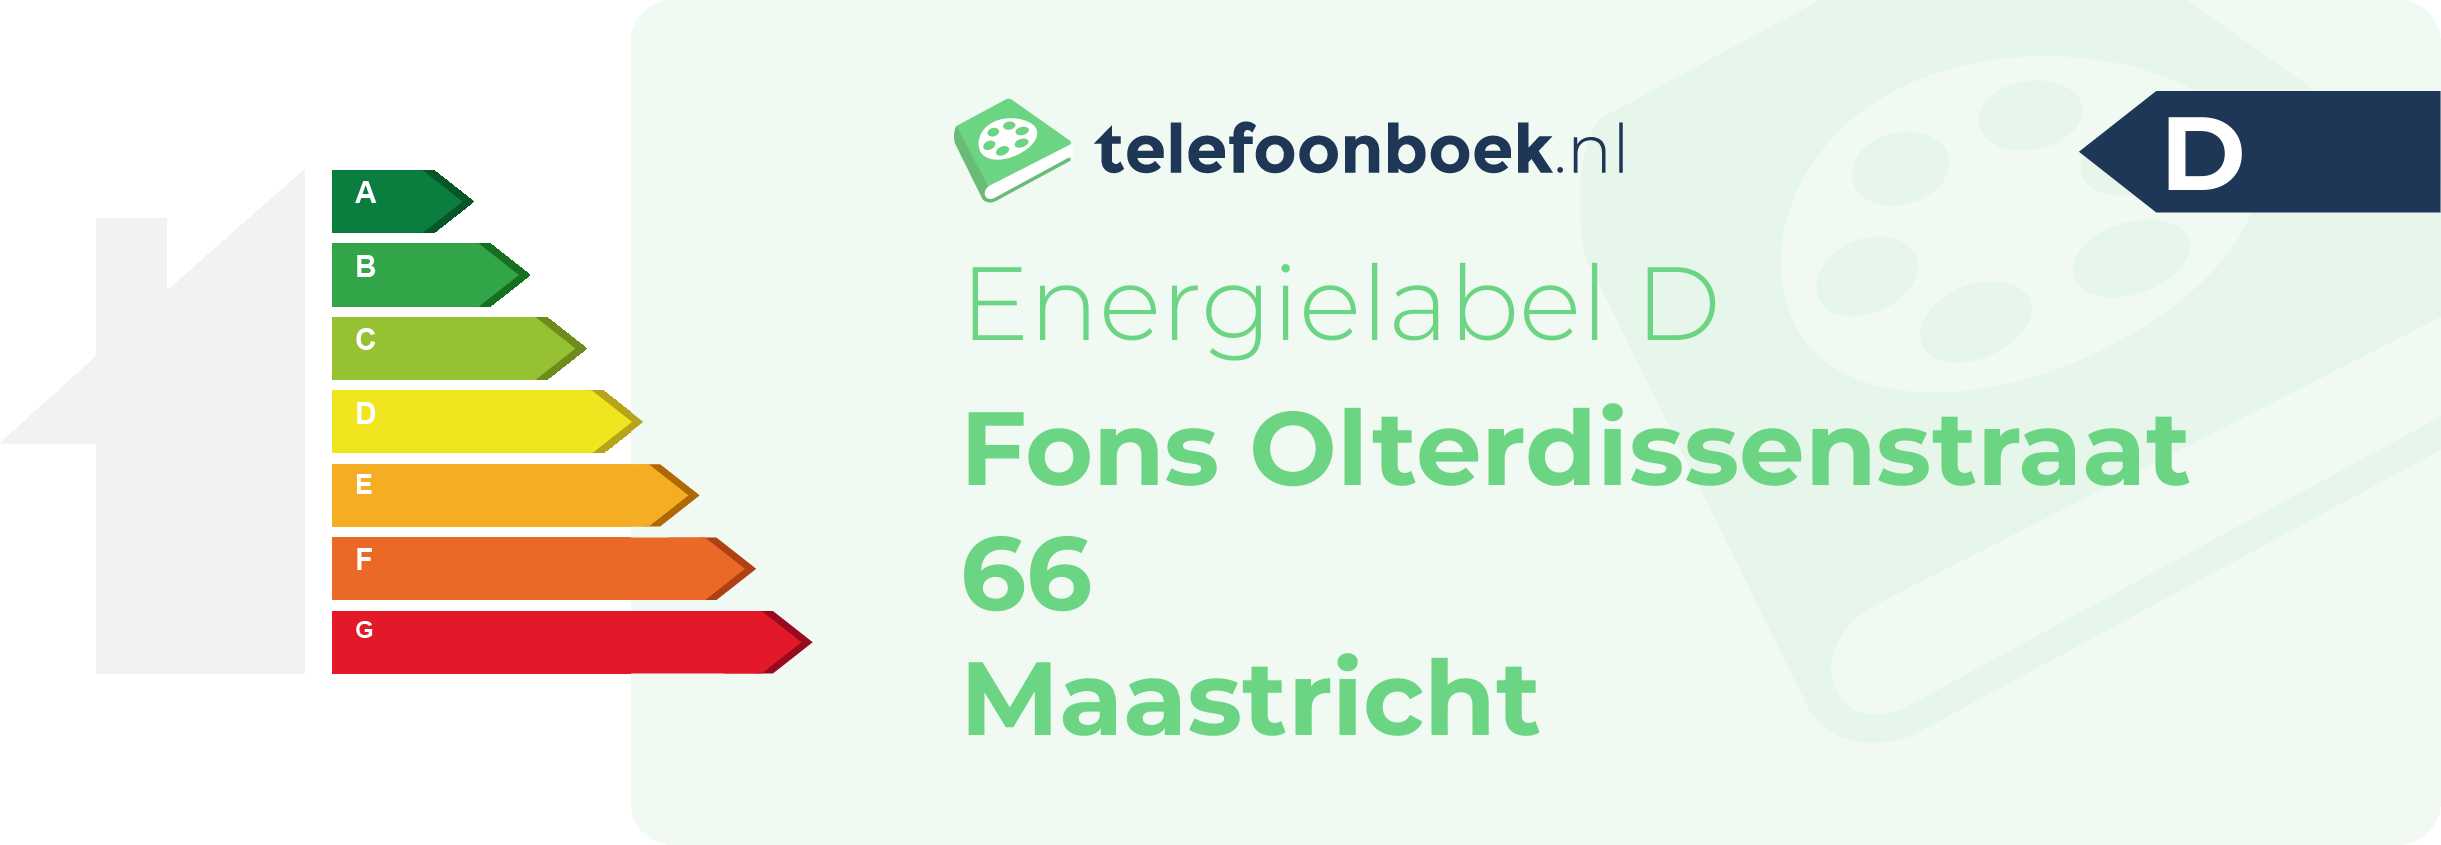 Energielabel Fons Olterdissenstraat 66 Maastricht